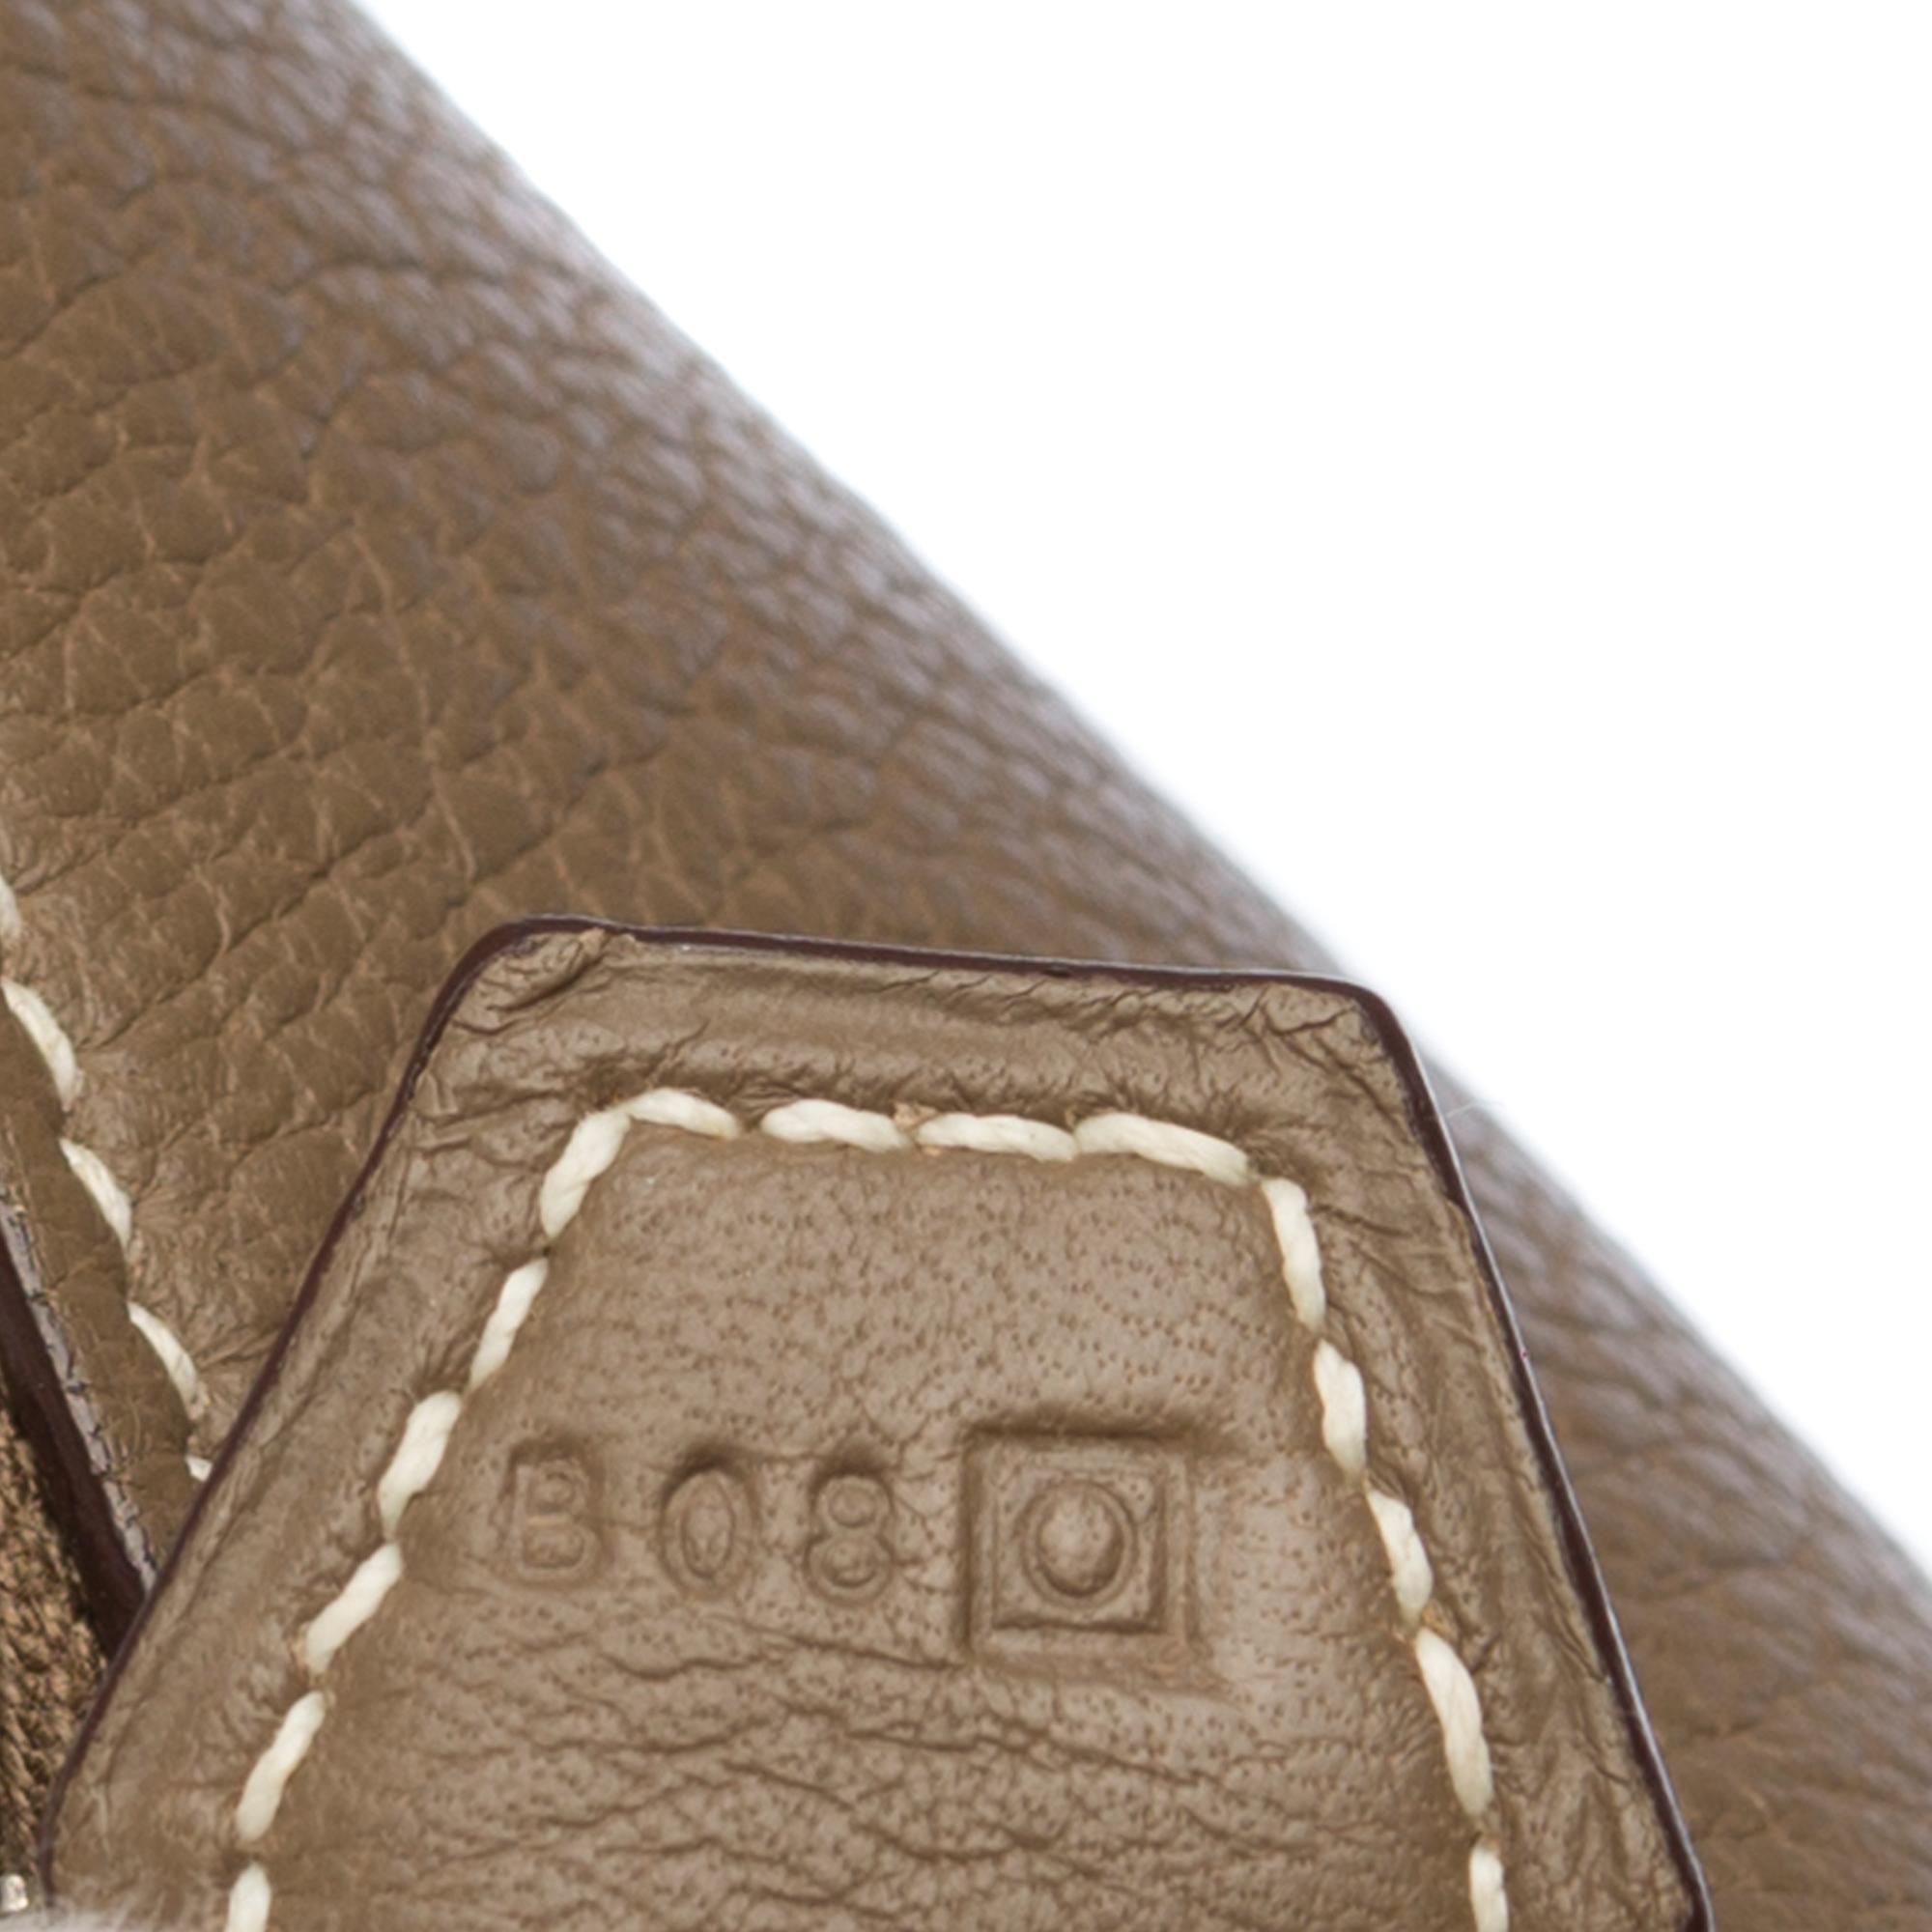 Brown Hermes Bolide 31 strap shoulder bag in Togo étoupe leather, silver hardware